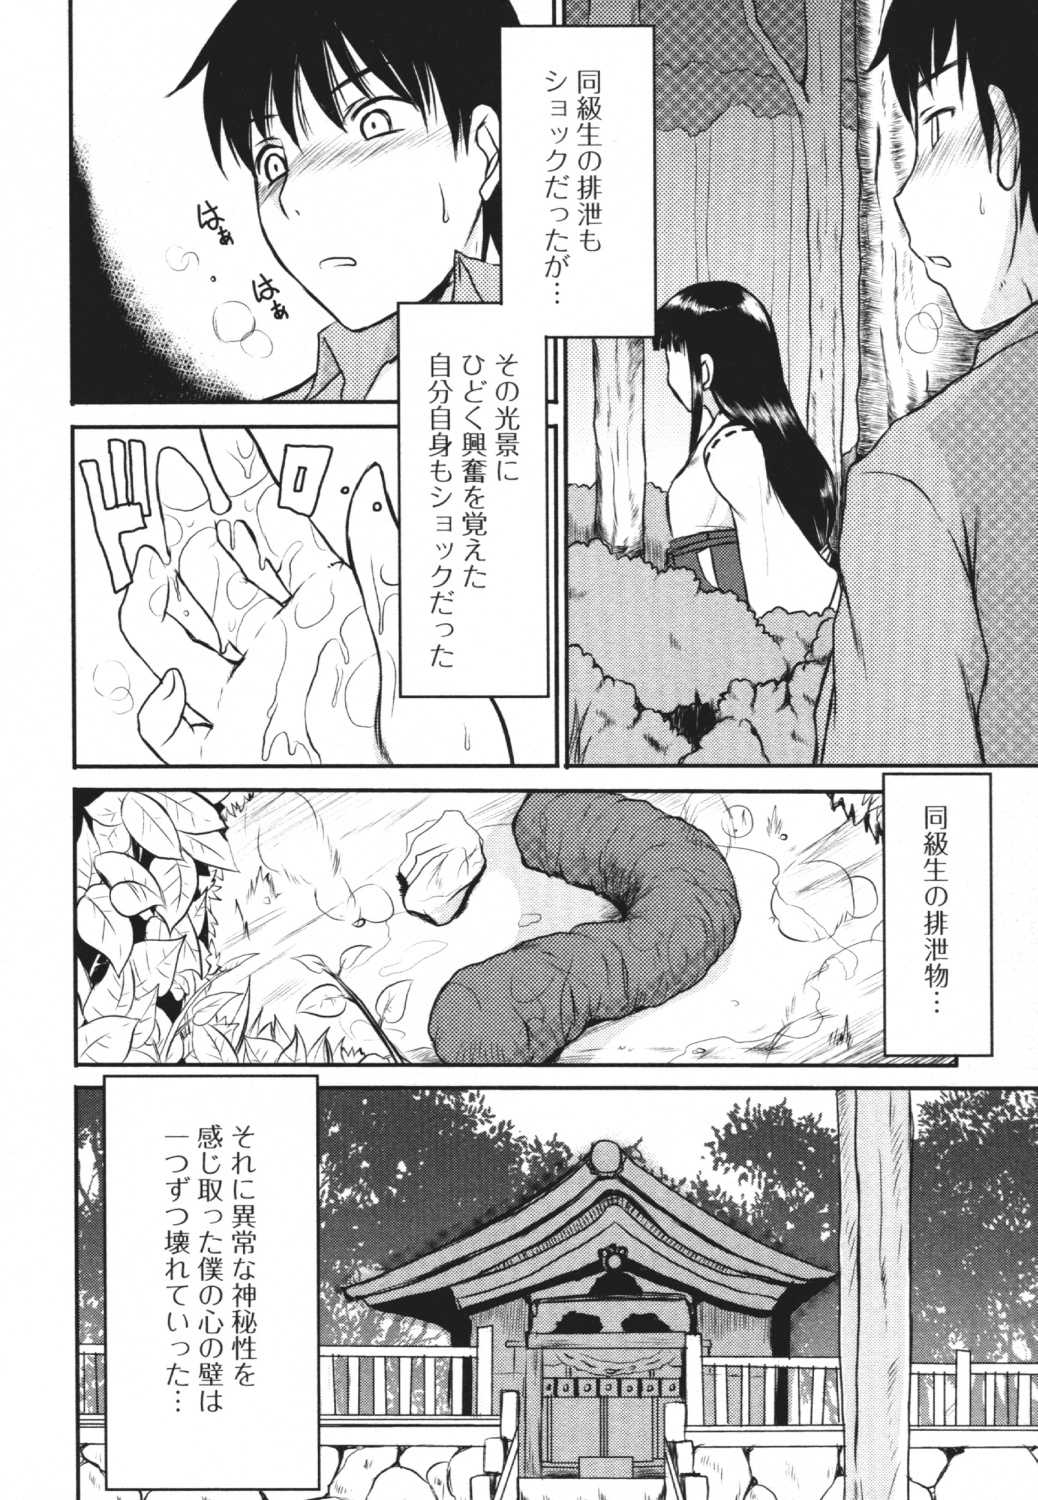 [Anthology] Do Not Peep 4 (Nozoite wa Ikenai 4) [アンソロジー] 覗いてはいけない 4